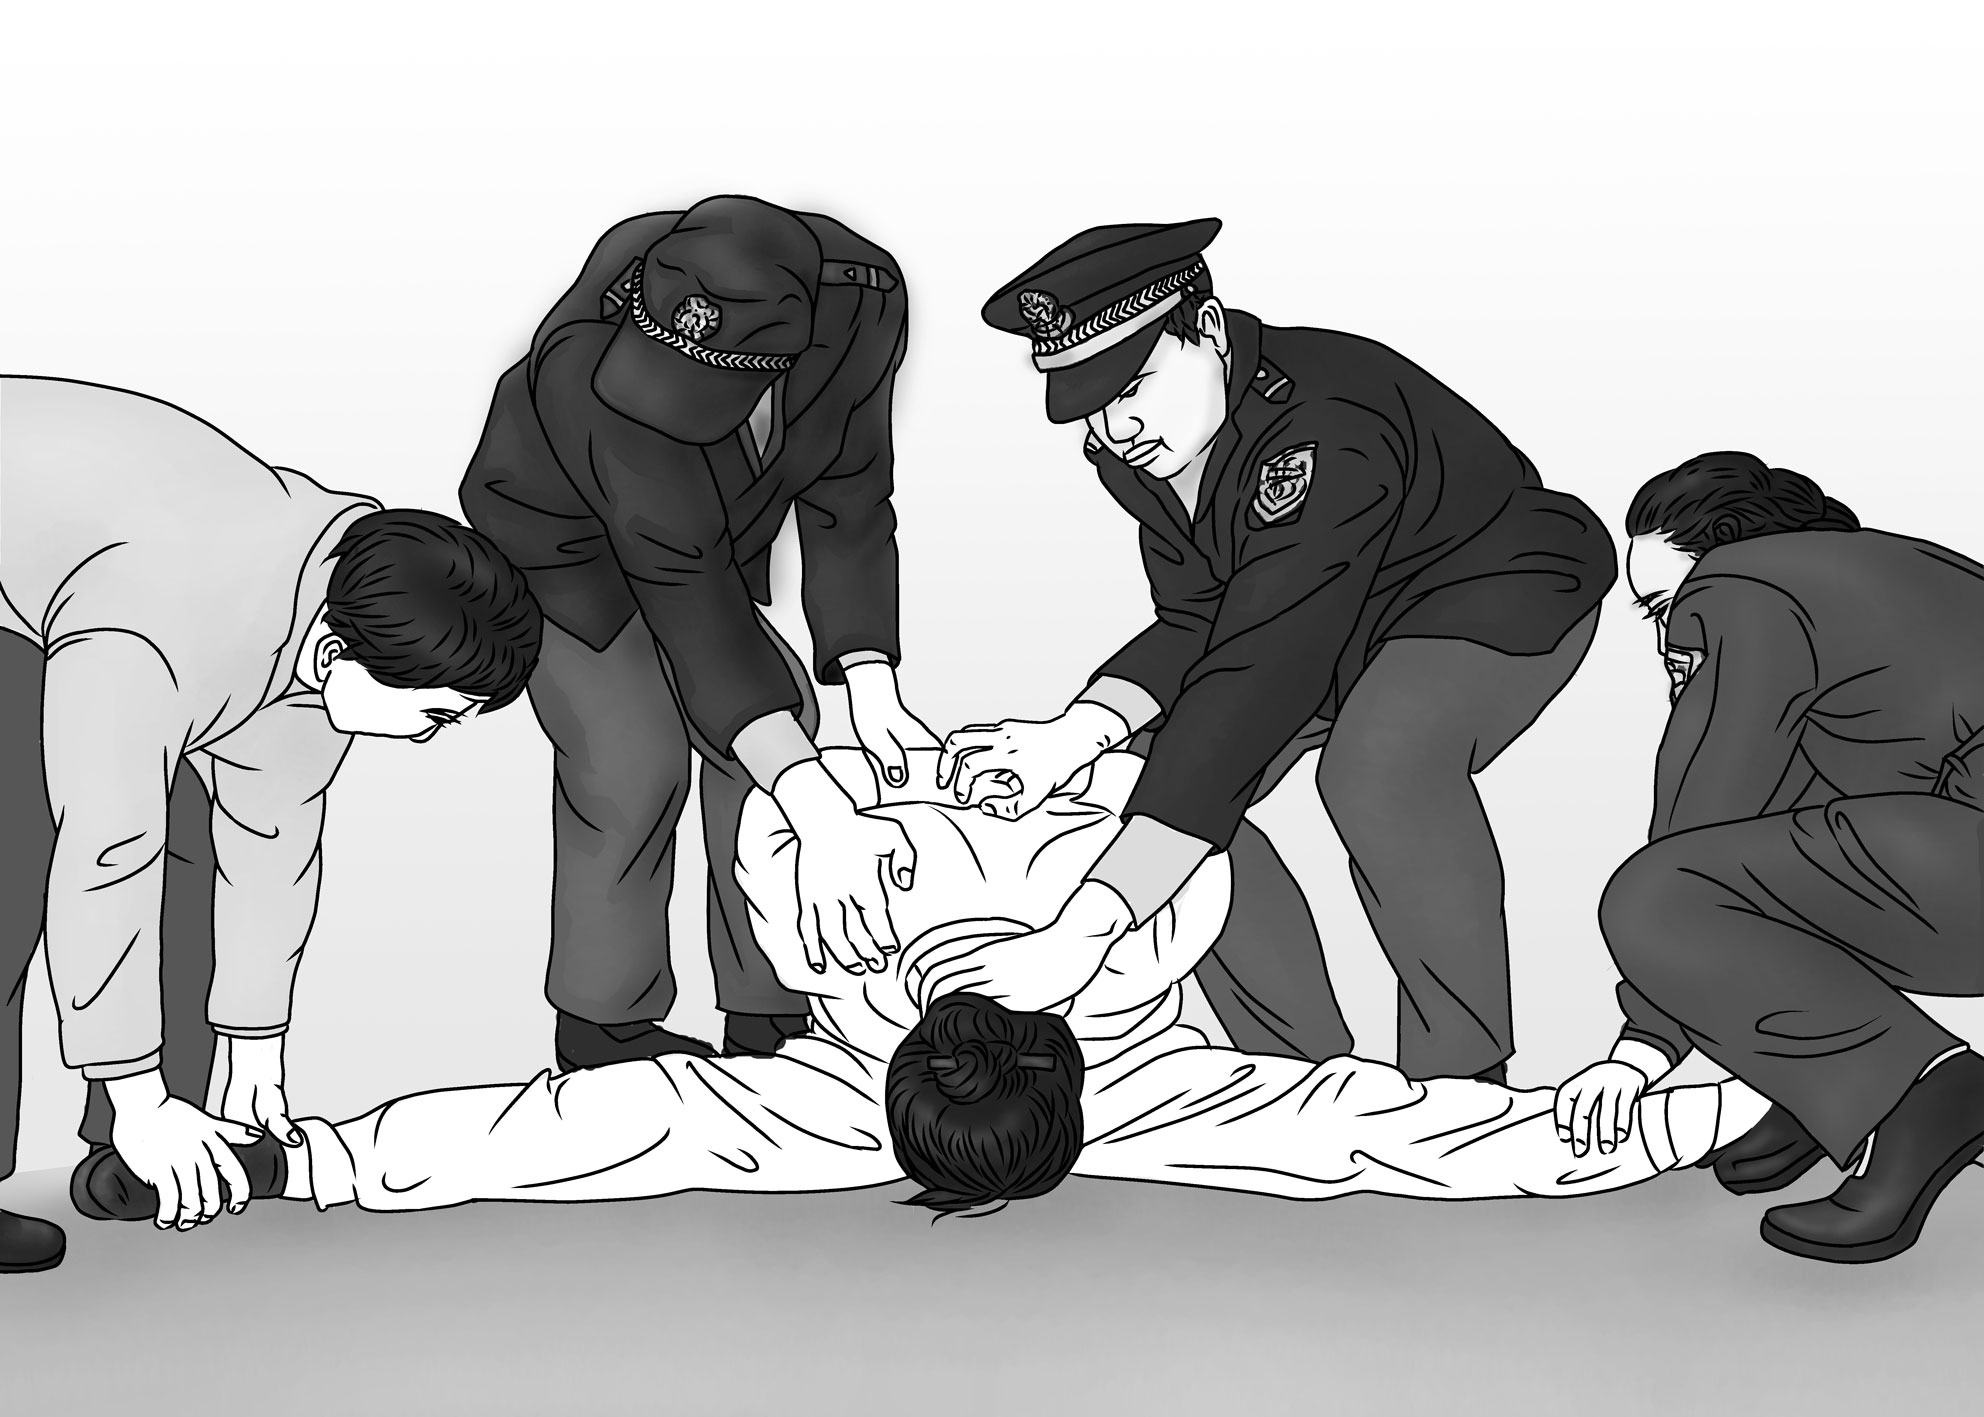 Image for article Des pratiquants de Falun Gong torturés dans la prison de Wangling dans la province du Hunan